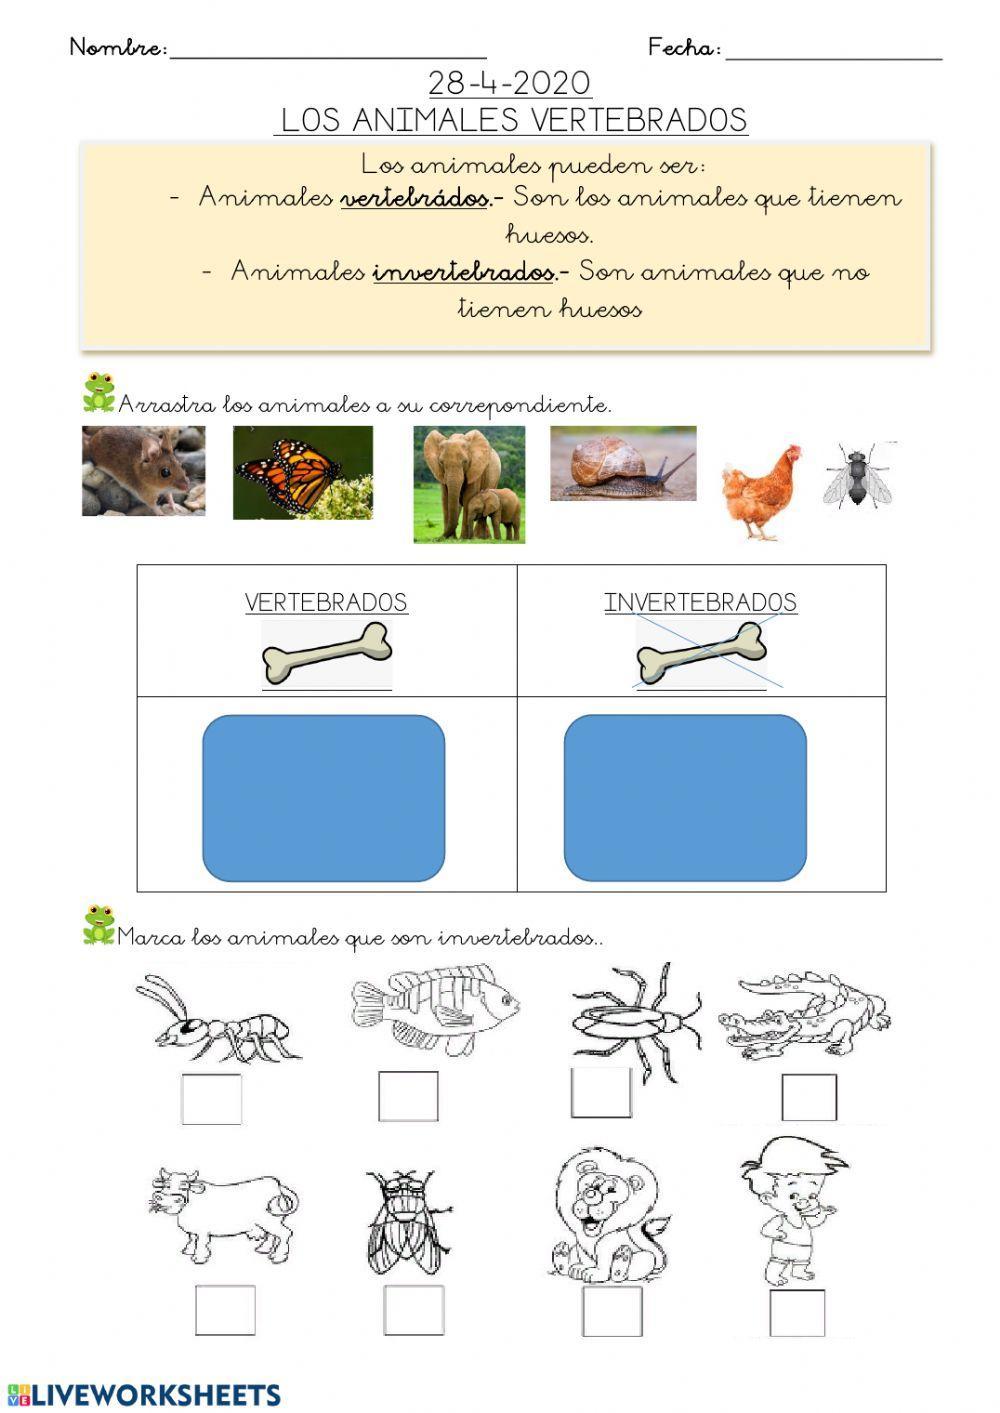 Hoja 5: animales vertebrados e invertebtrados 28-4